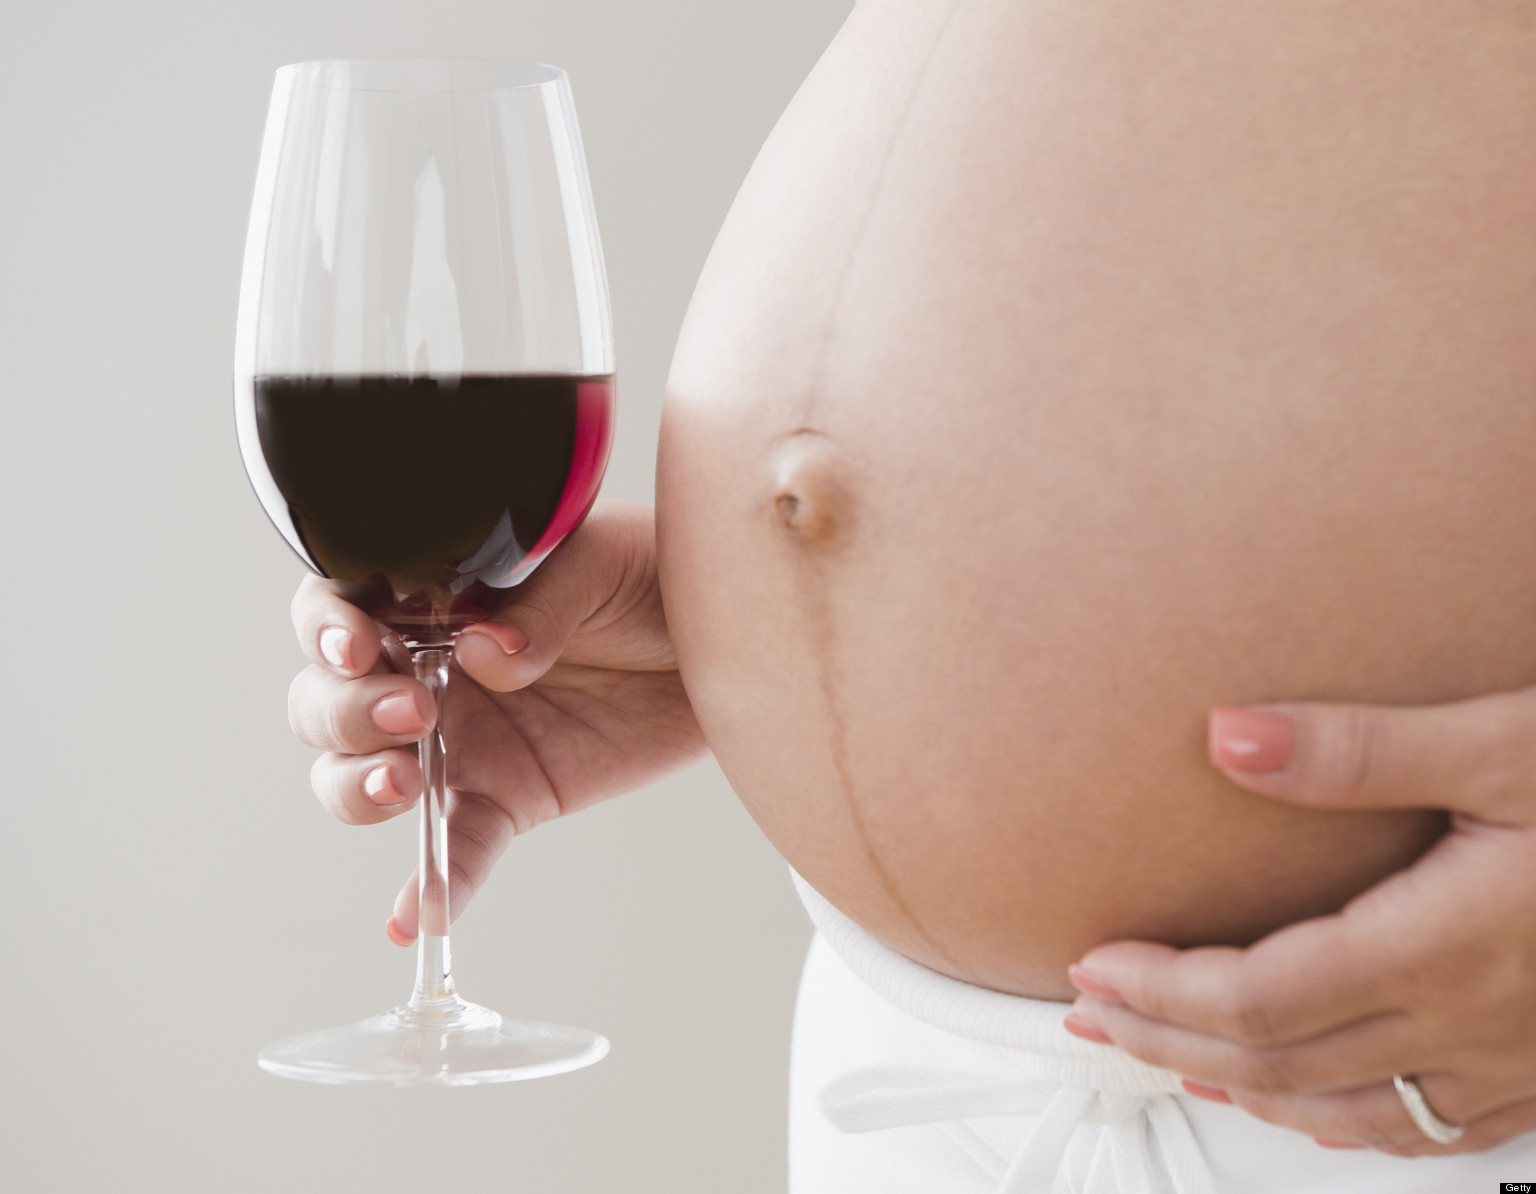 Mujer embarazada que consumía vodka y ocho latas de cerveza al día fue acusada de “crimen violento”